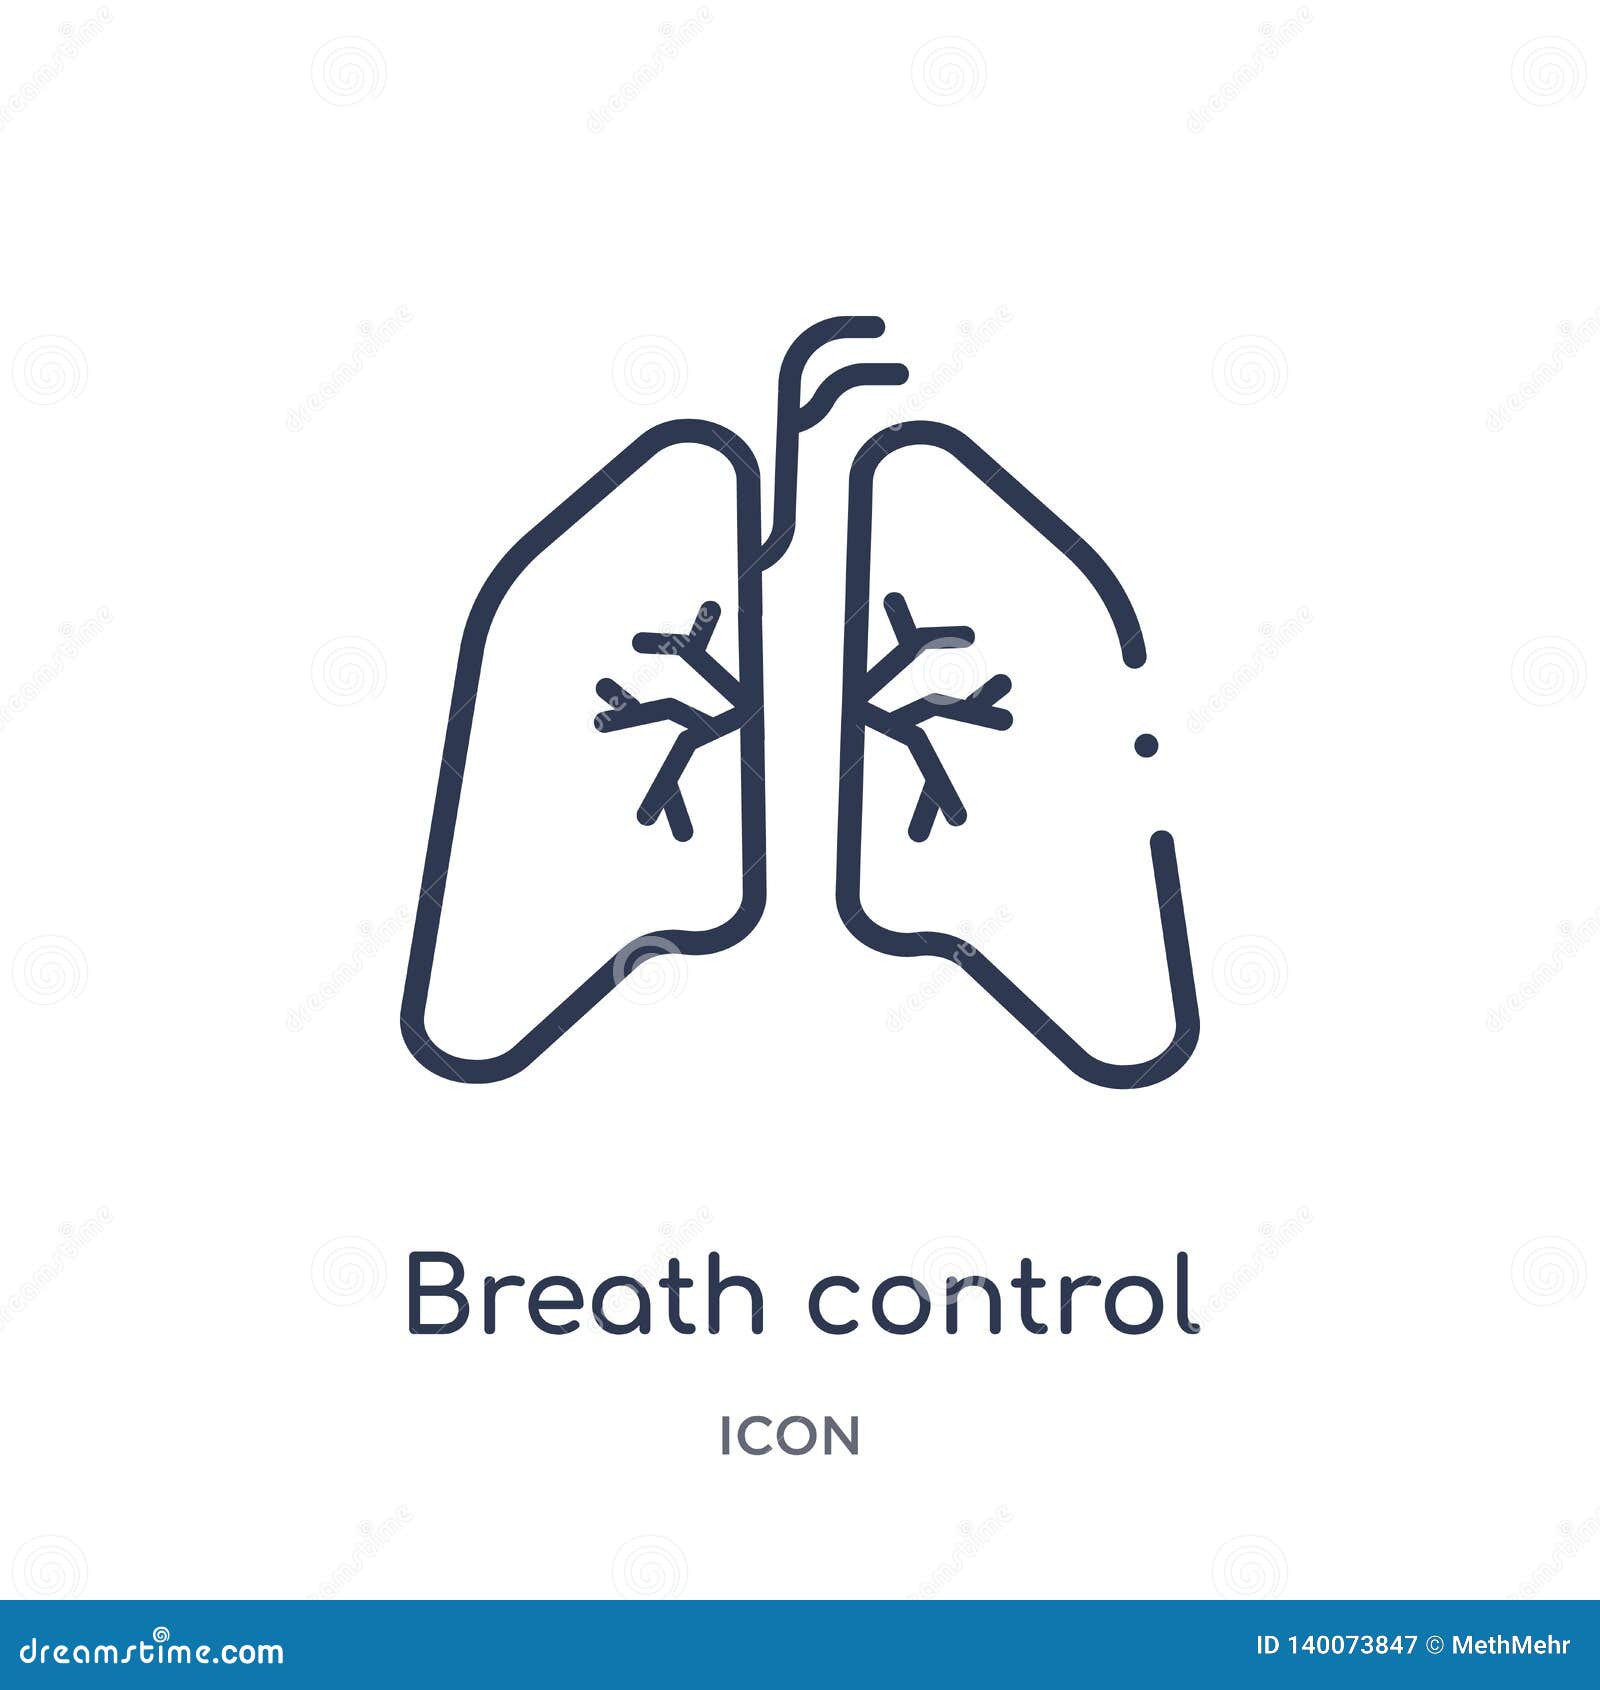 Breath Control